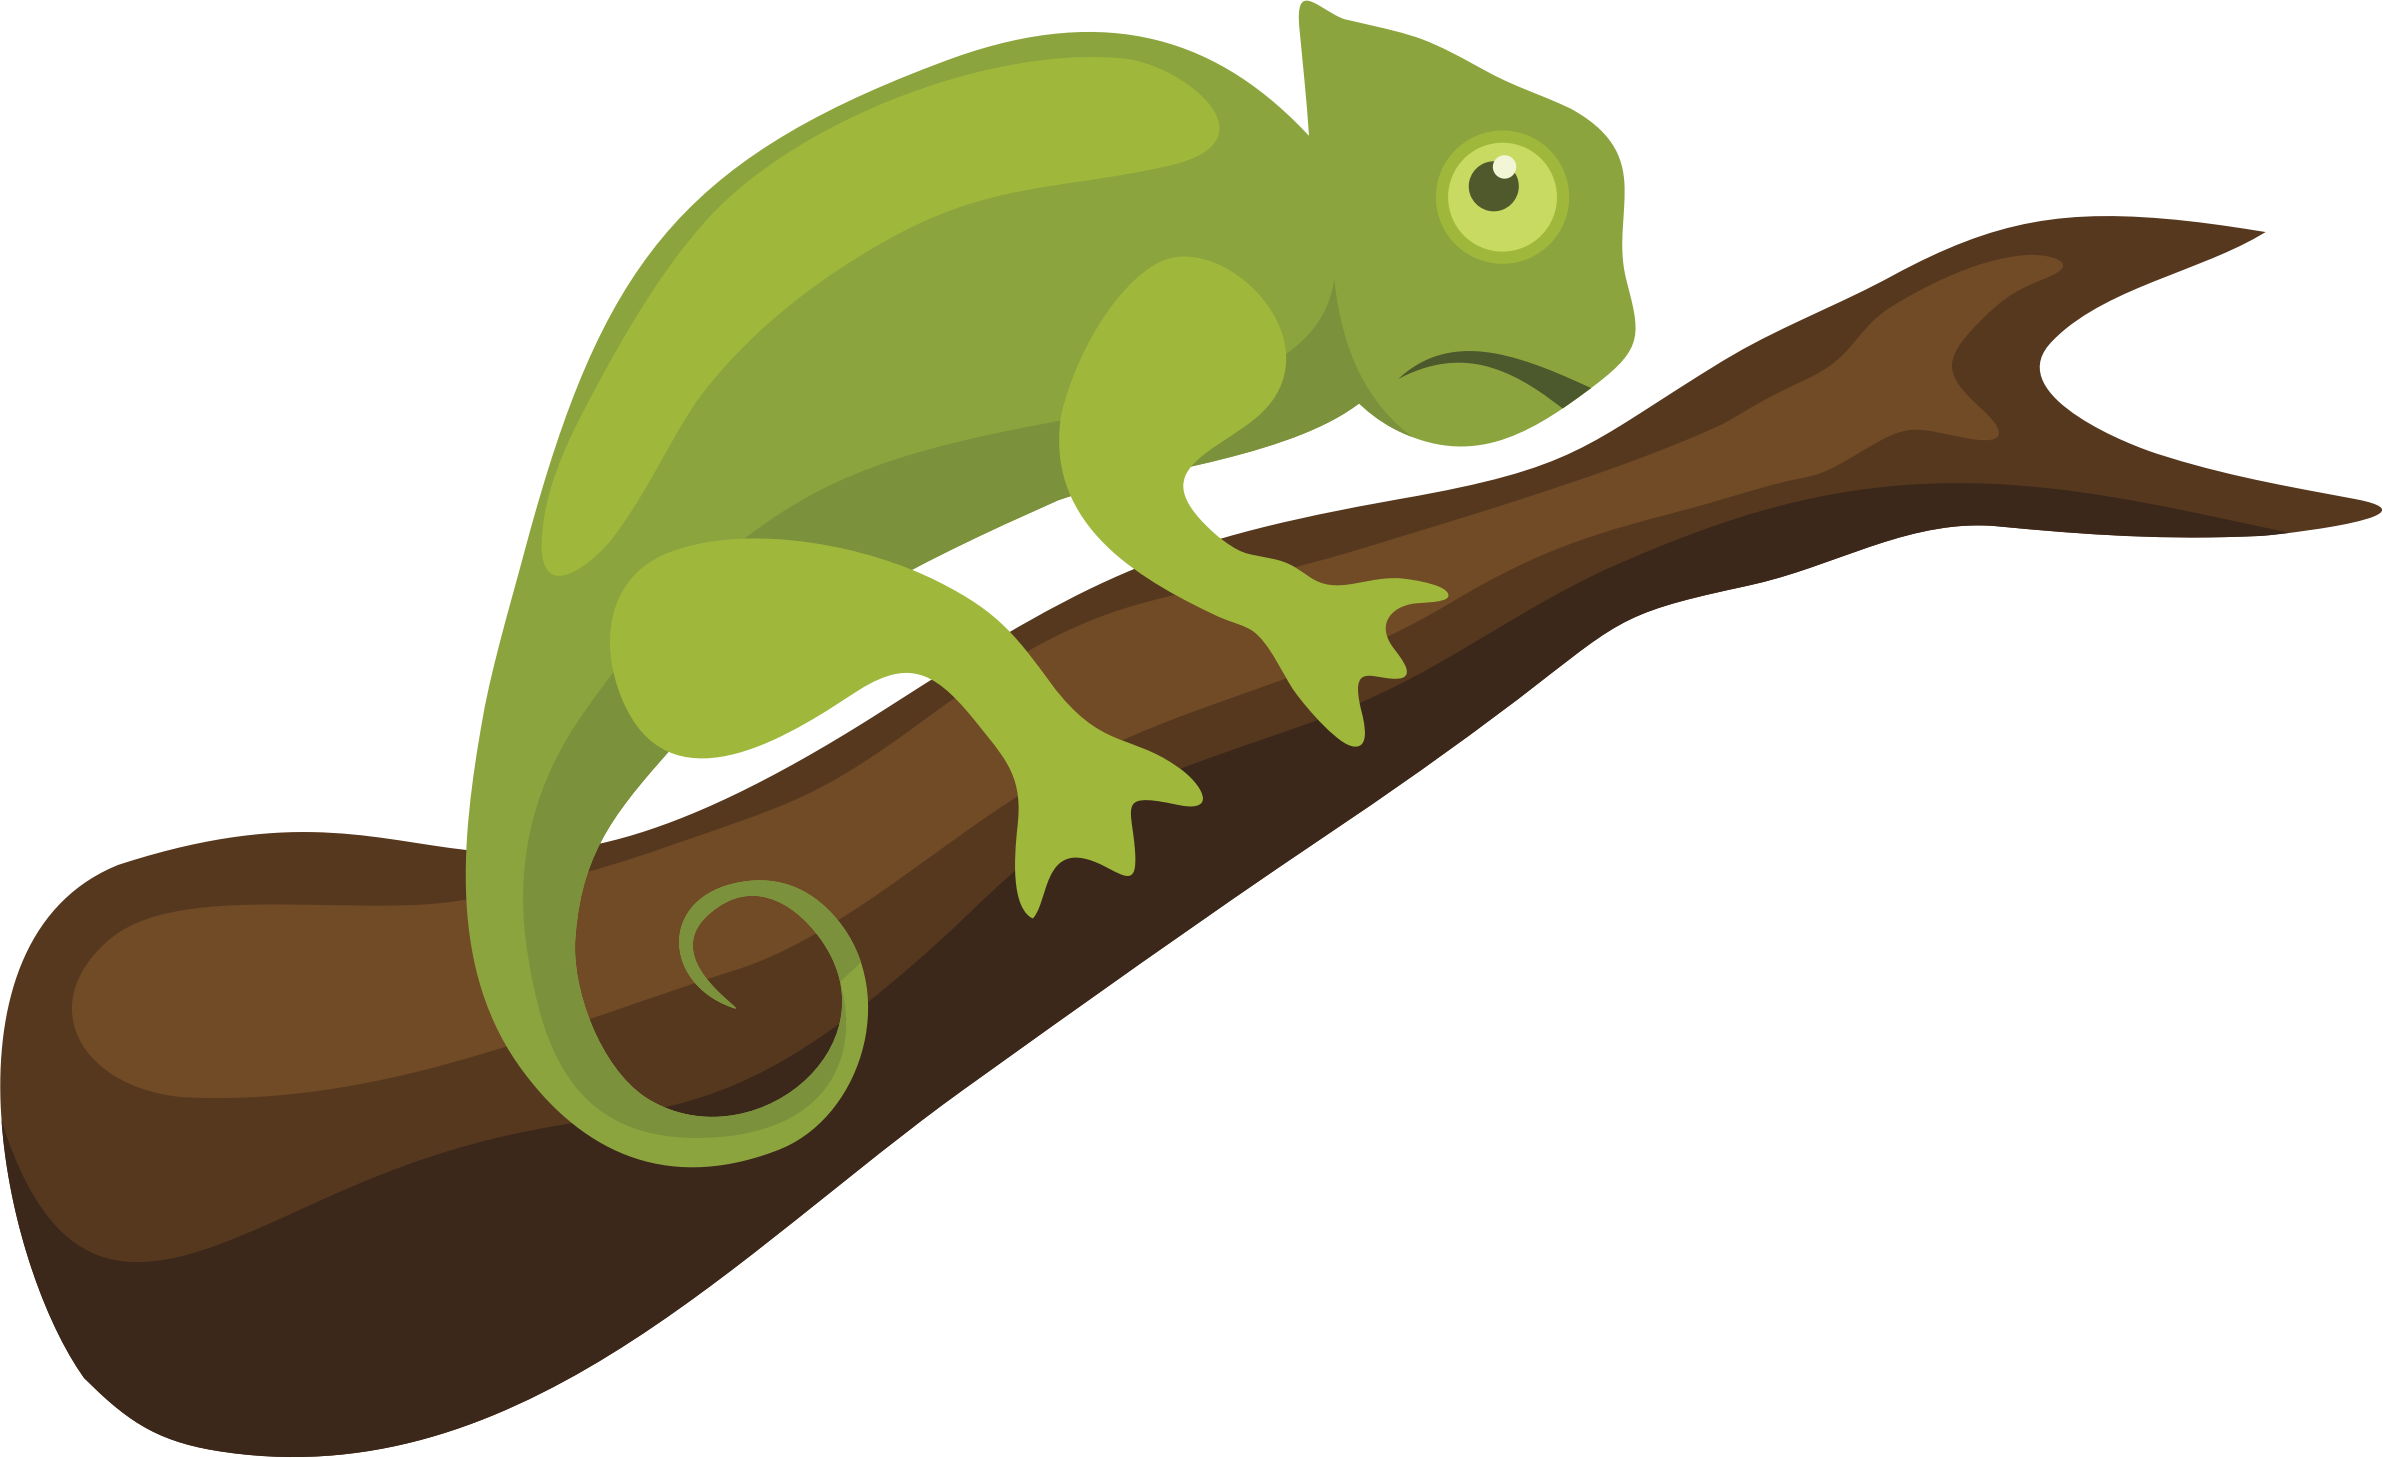 Chameleon - Clipart Chameleon (2383x1458)